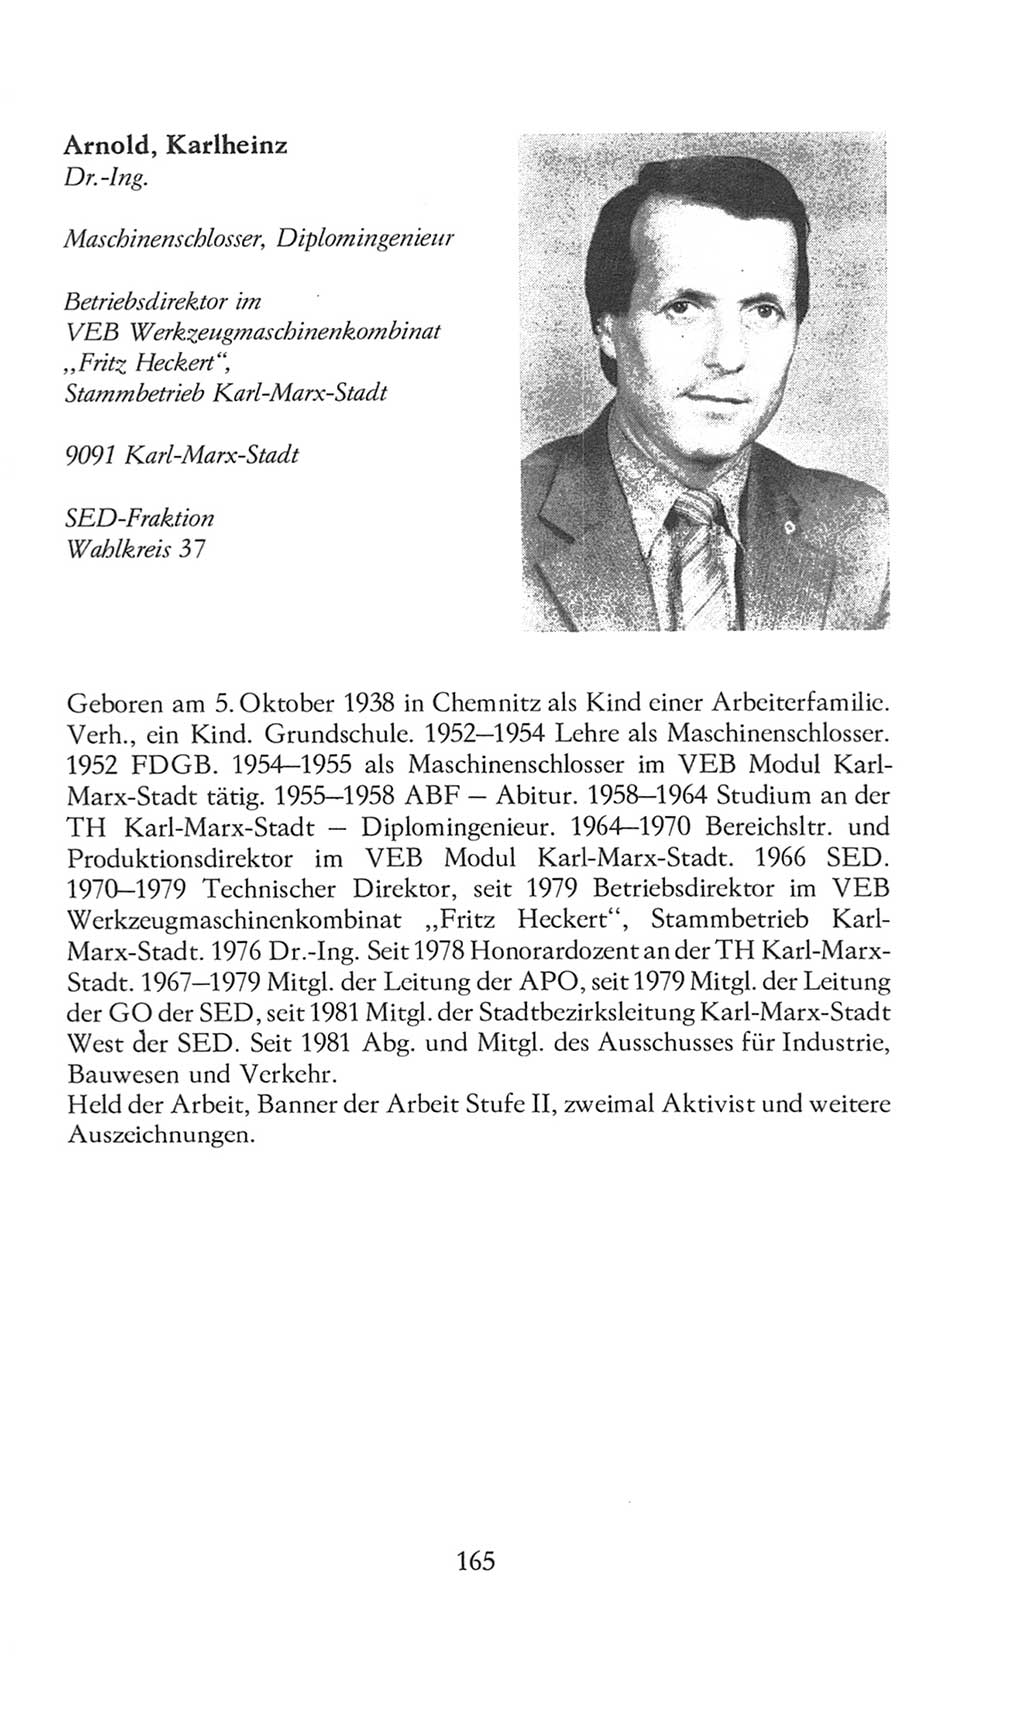 Volkskammer (VK) der Deutschen Demokratischen Republik (DDR), 8. Wahlperiode 1981-1986, Seite 165 (VK. DDR 8. WP. 1981-1986, S. 165)